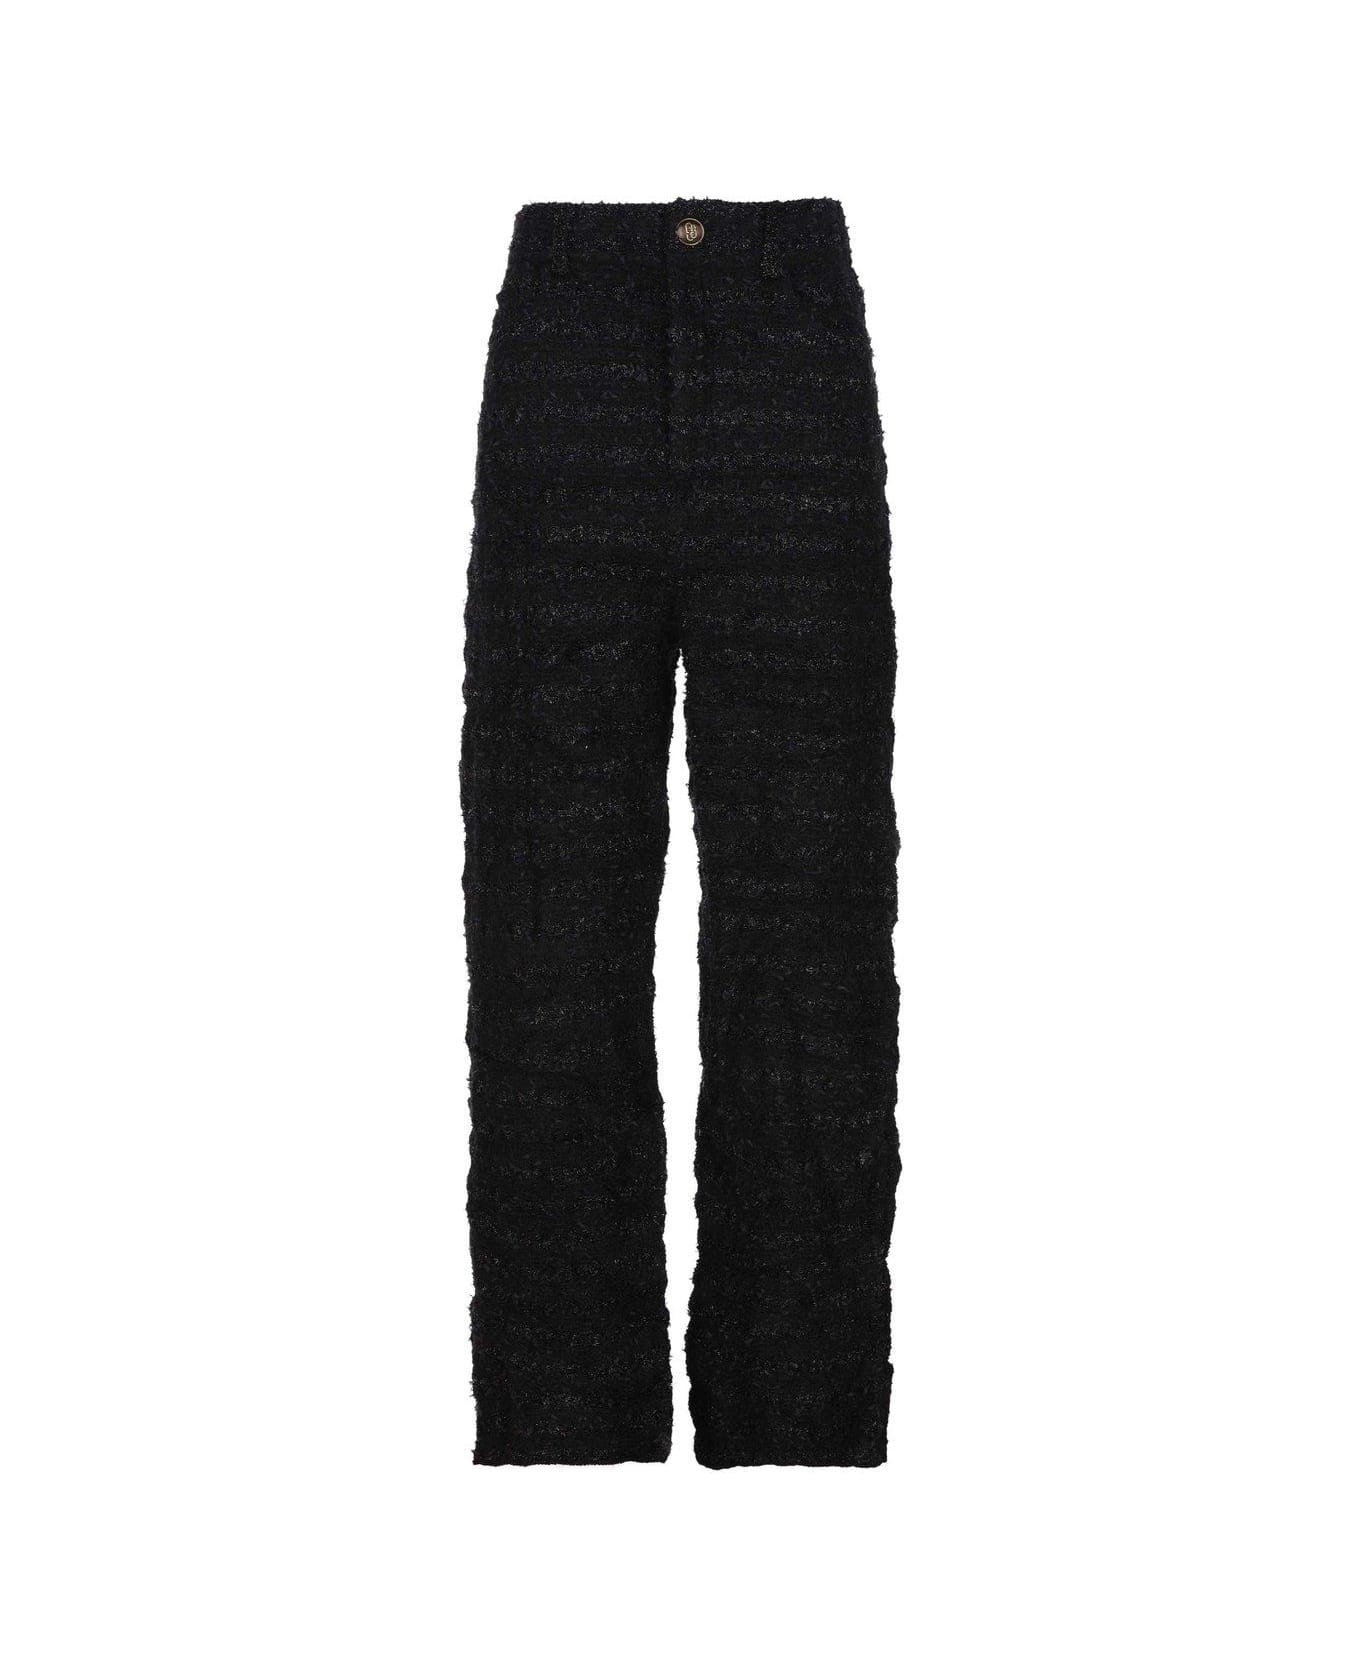 Balenciaga Tweed Metallic Thread Trousers - Black